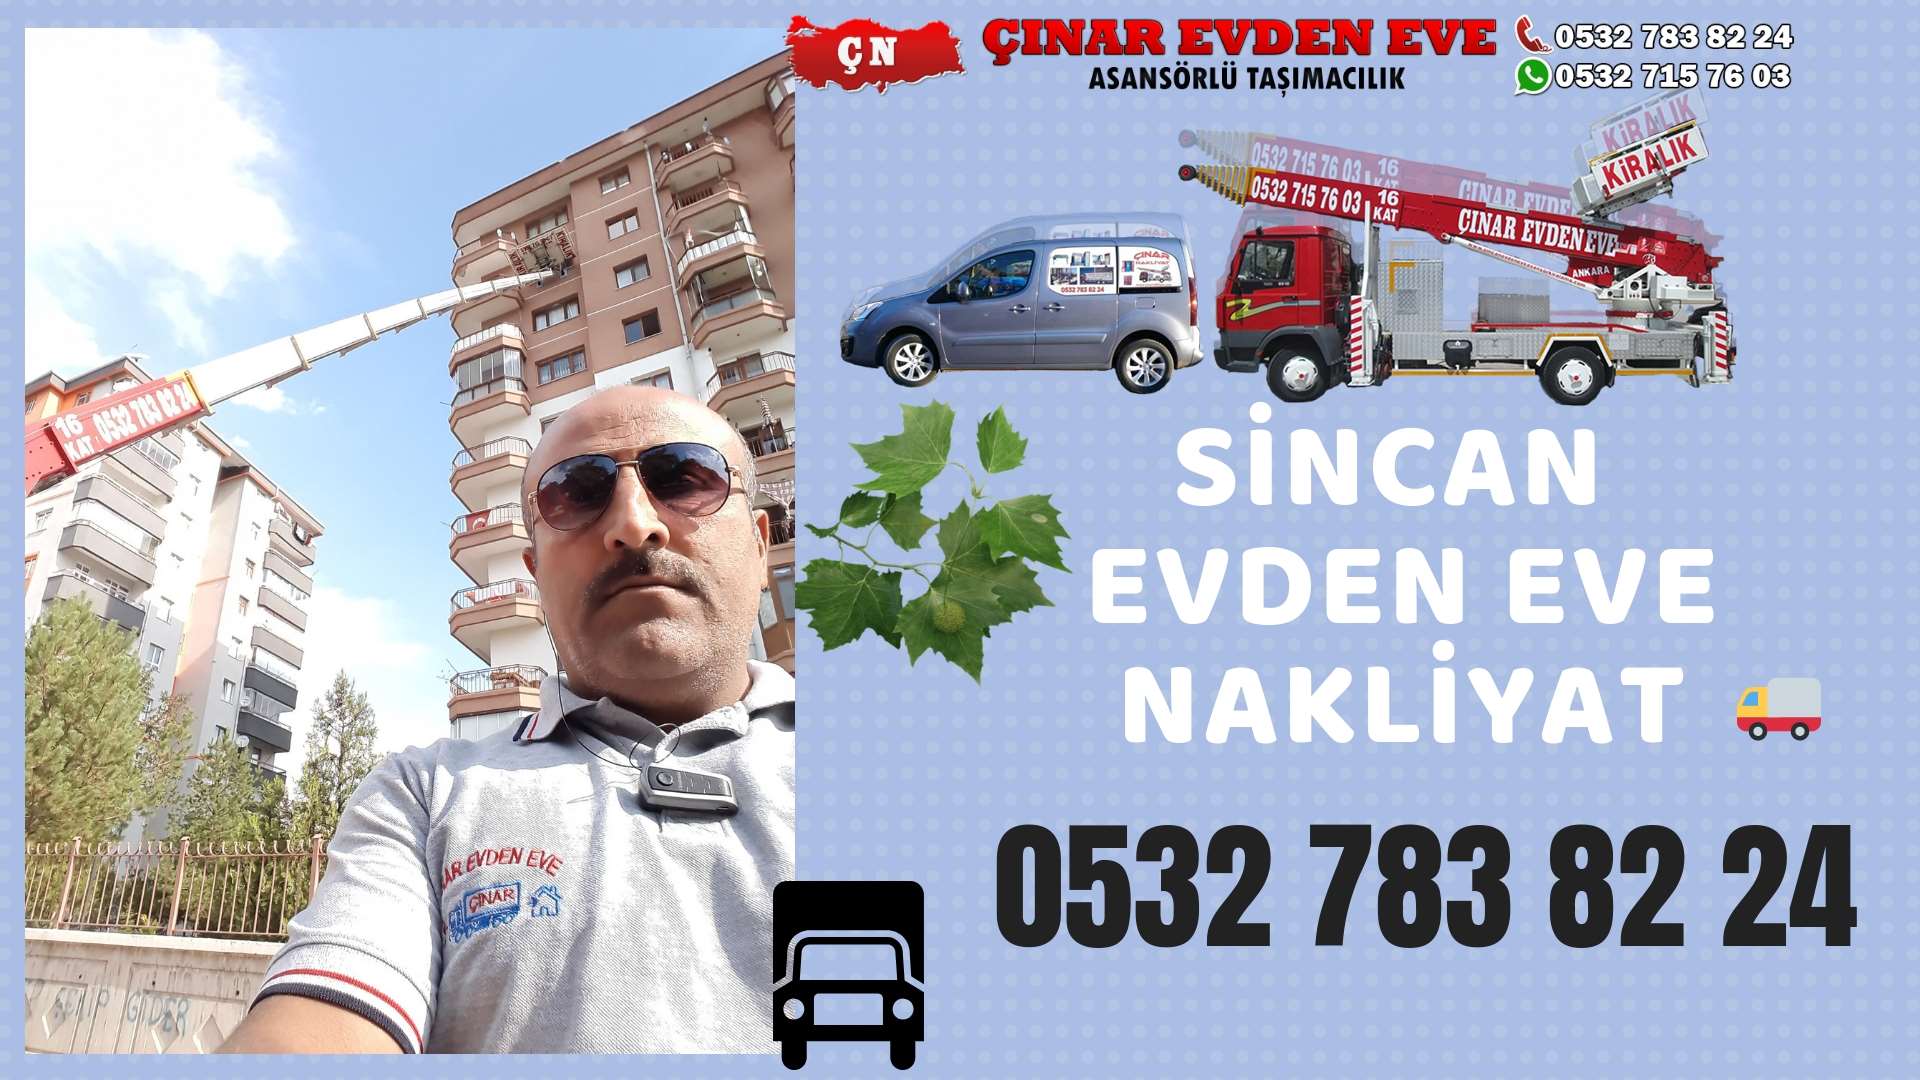 Ankara Evren Evden Eve Nakliyat, Asansörlü Taşımacılık, Ofis / İş Yeri Taşıma 0532 715 76 03